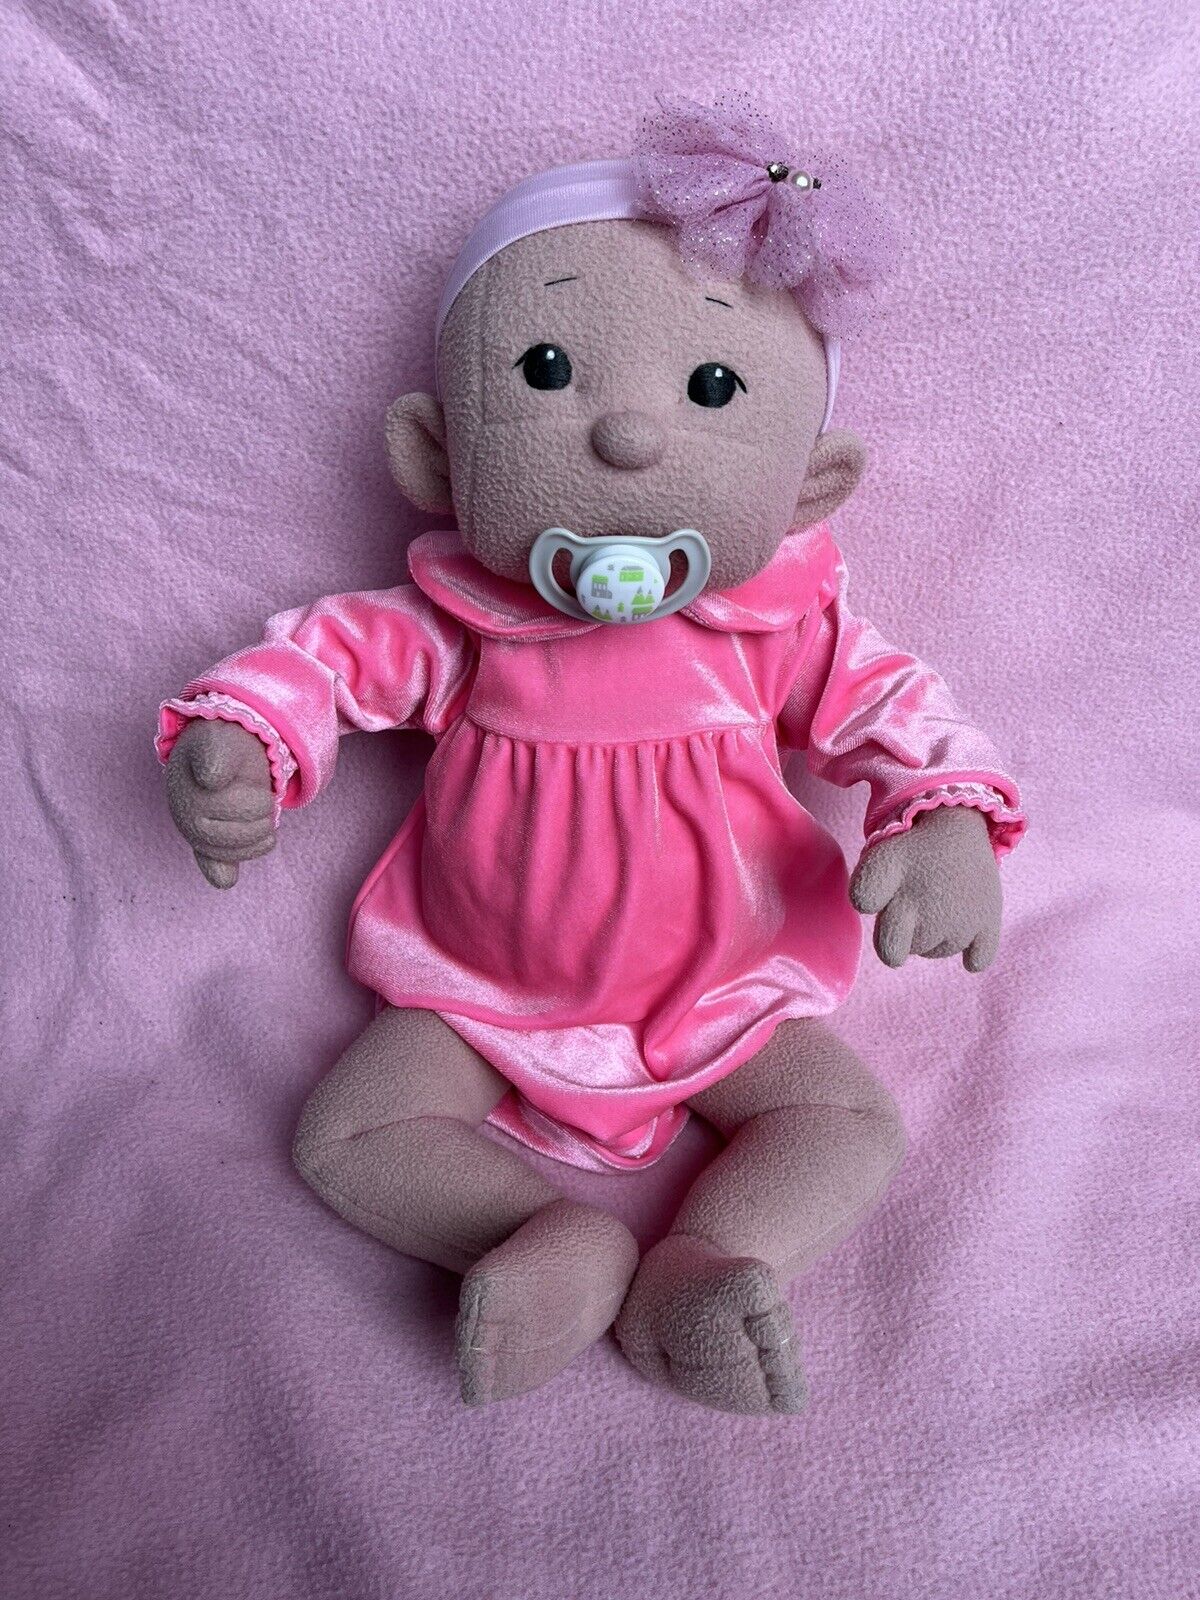 Fretta’s Lovable Dolls Bald Baby Handmade Soft Sculpture Doll 18” GUC Pacifier